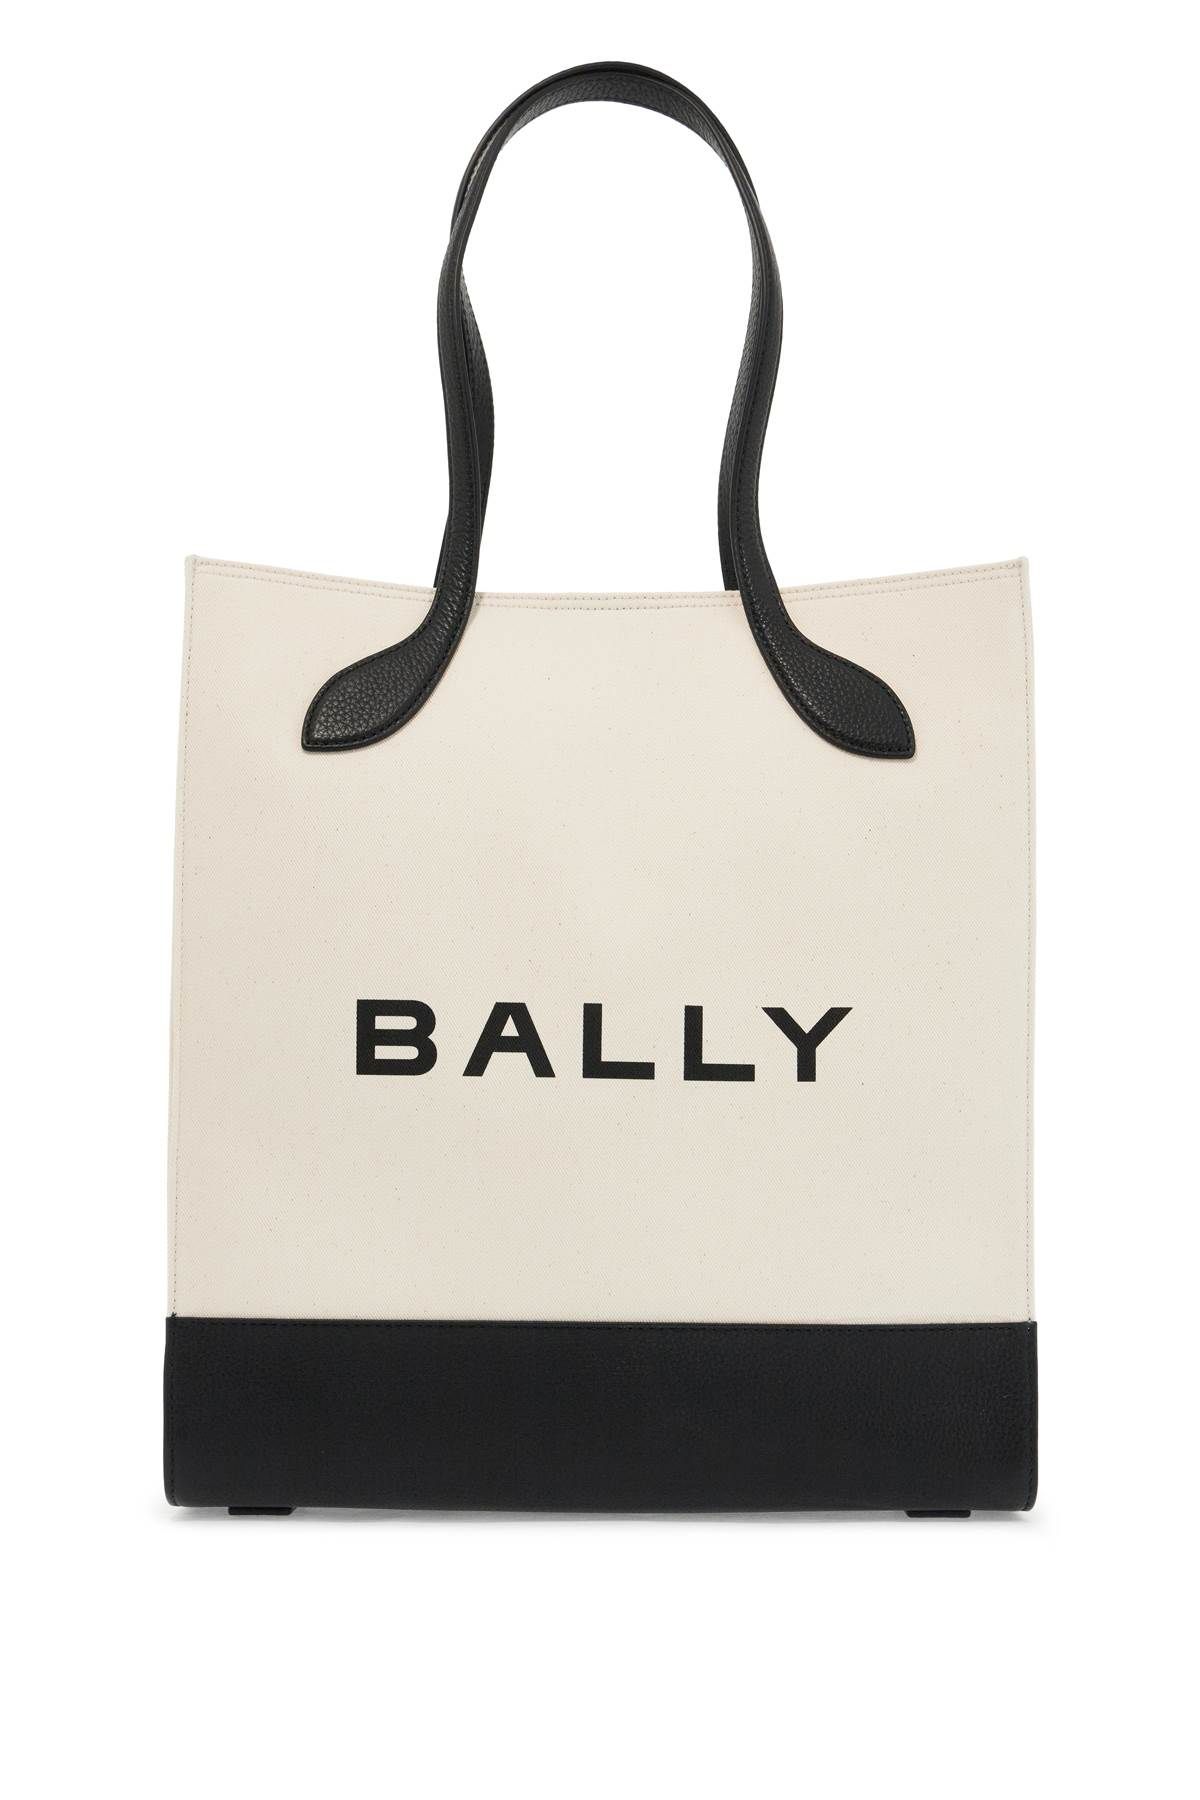 BALLY BALLY bar keep on tote bag